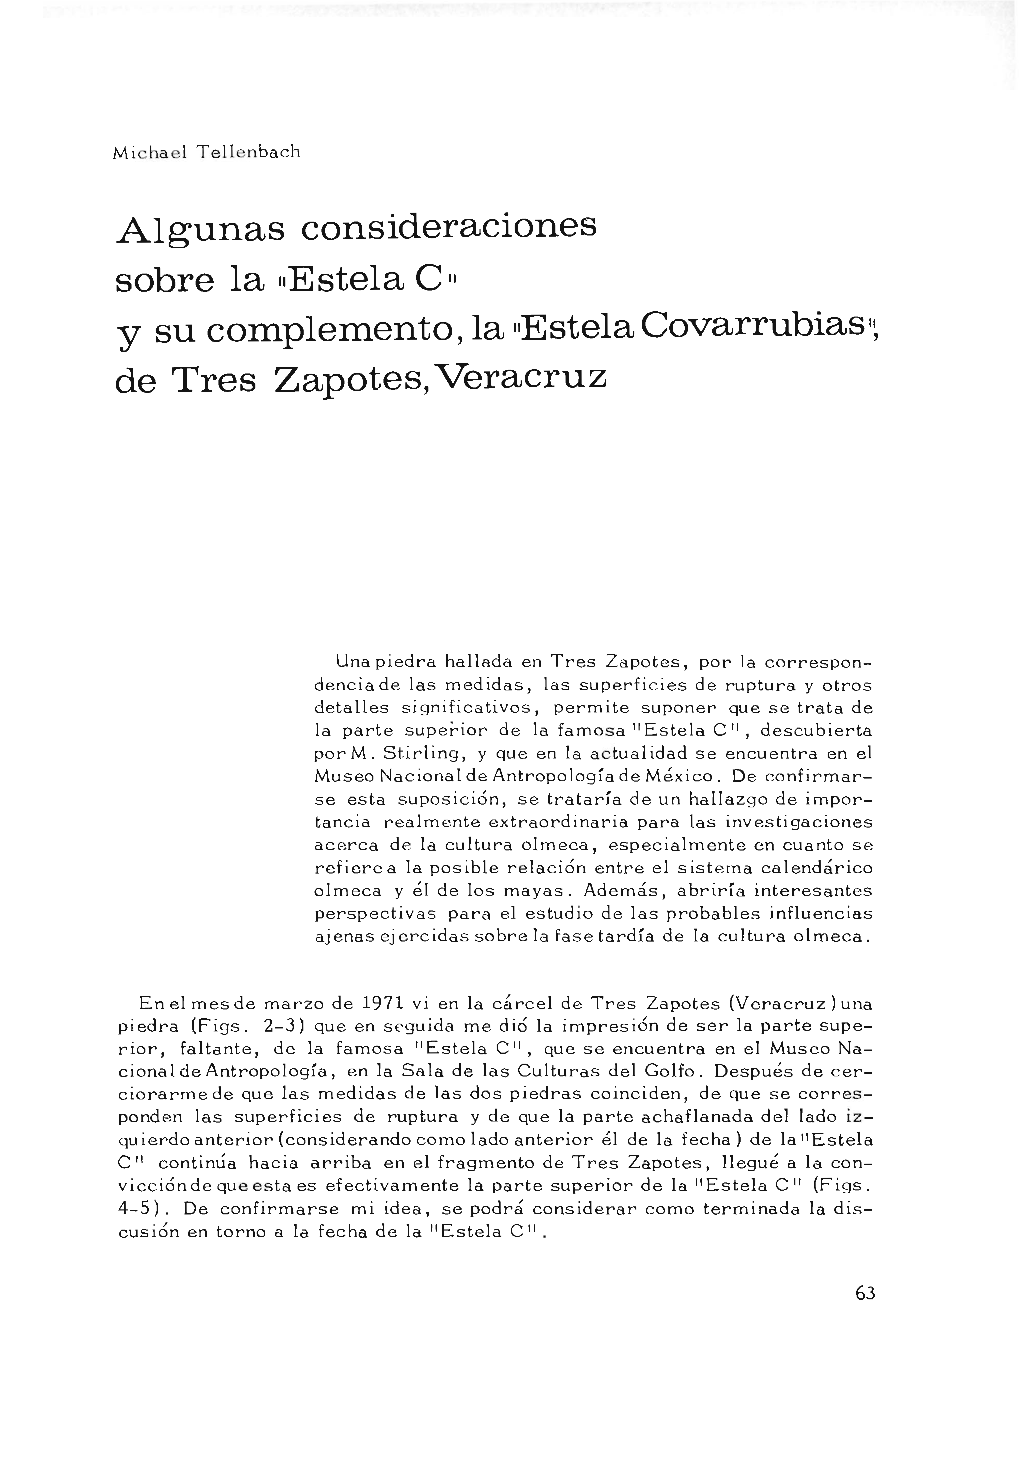 Algunas Consideraciones Sobre La "Estela C" Y Su Complemento, La -Estelacovarrubias", De Tres Zapotes, Veracruz